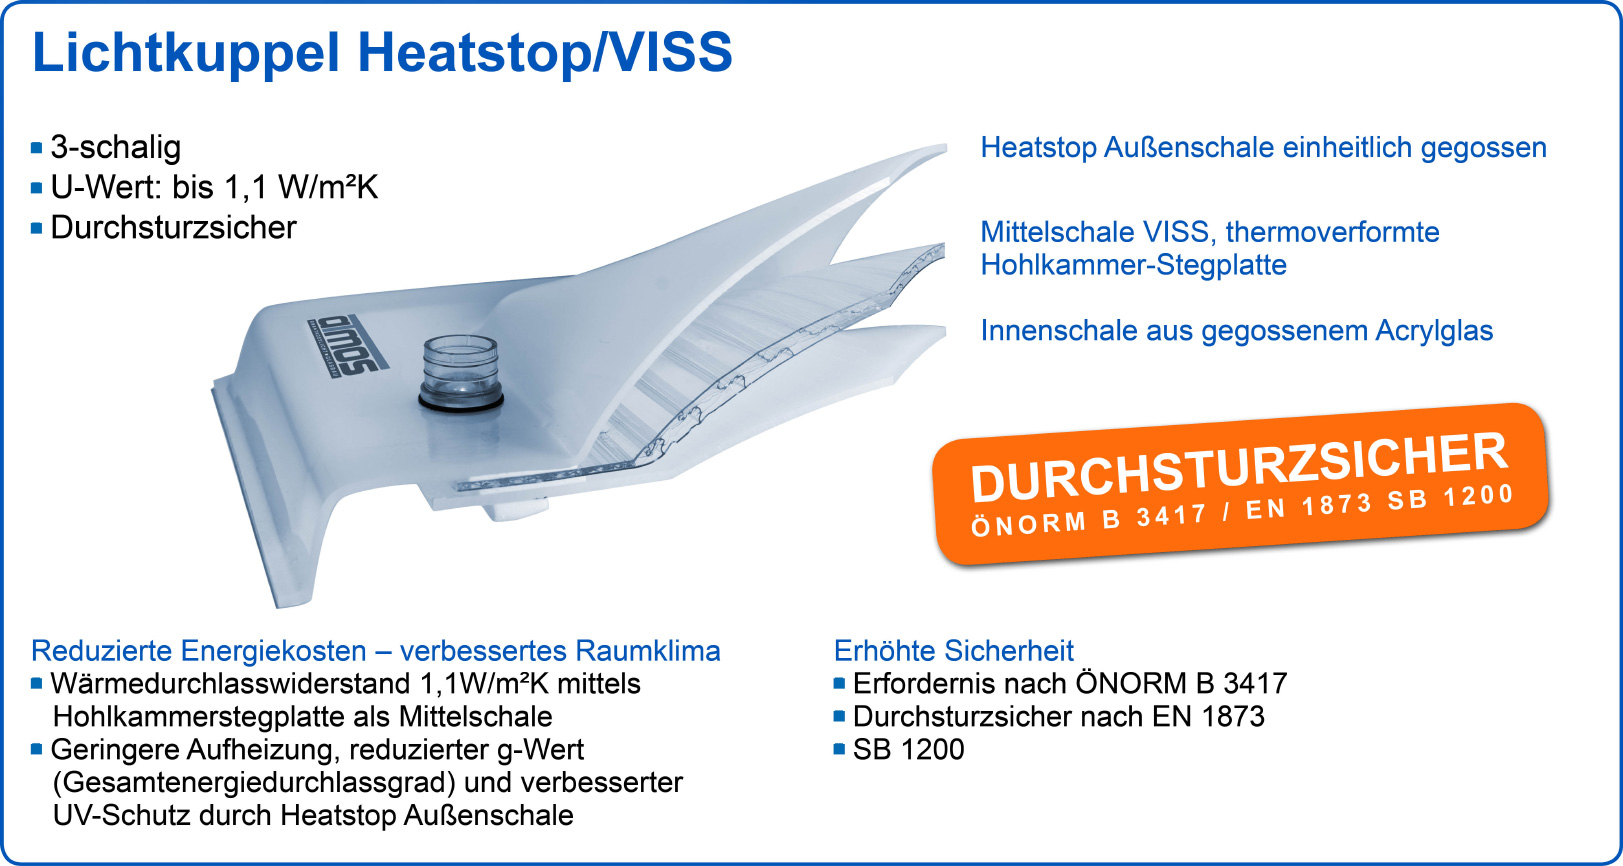 Lichtkuppel Heatstop/VISS: reduzierte Energiekosten, erhöhte Sicherheit